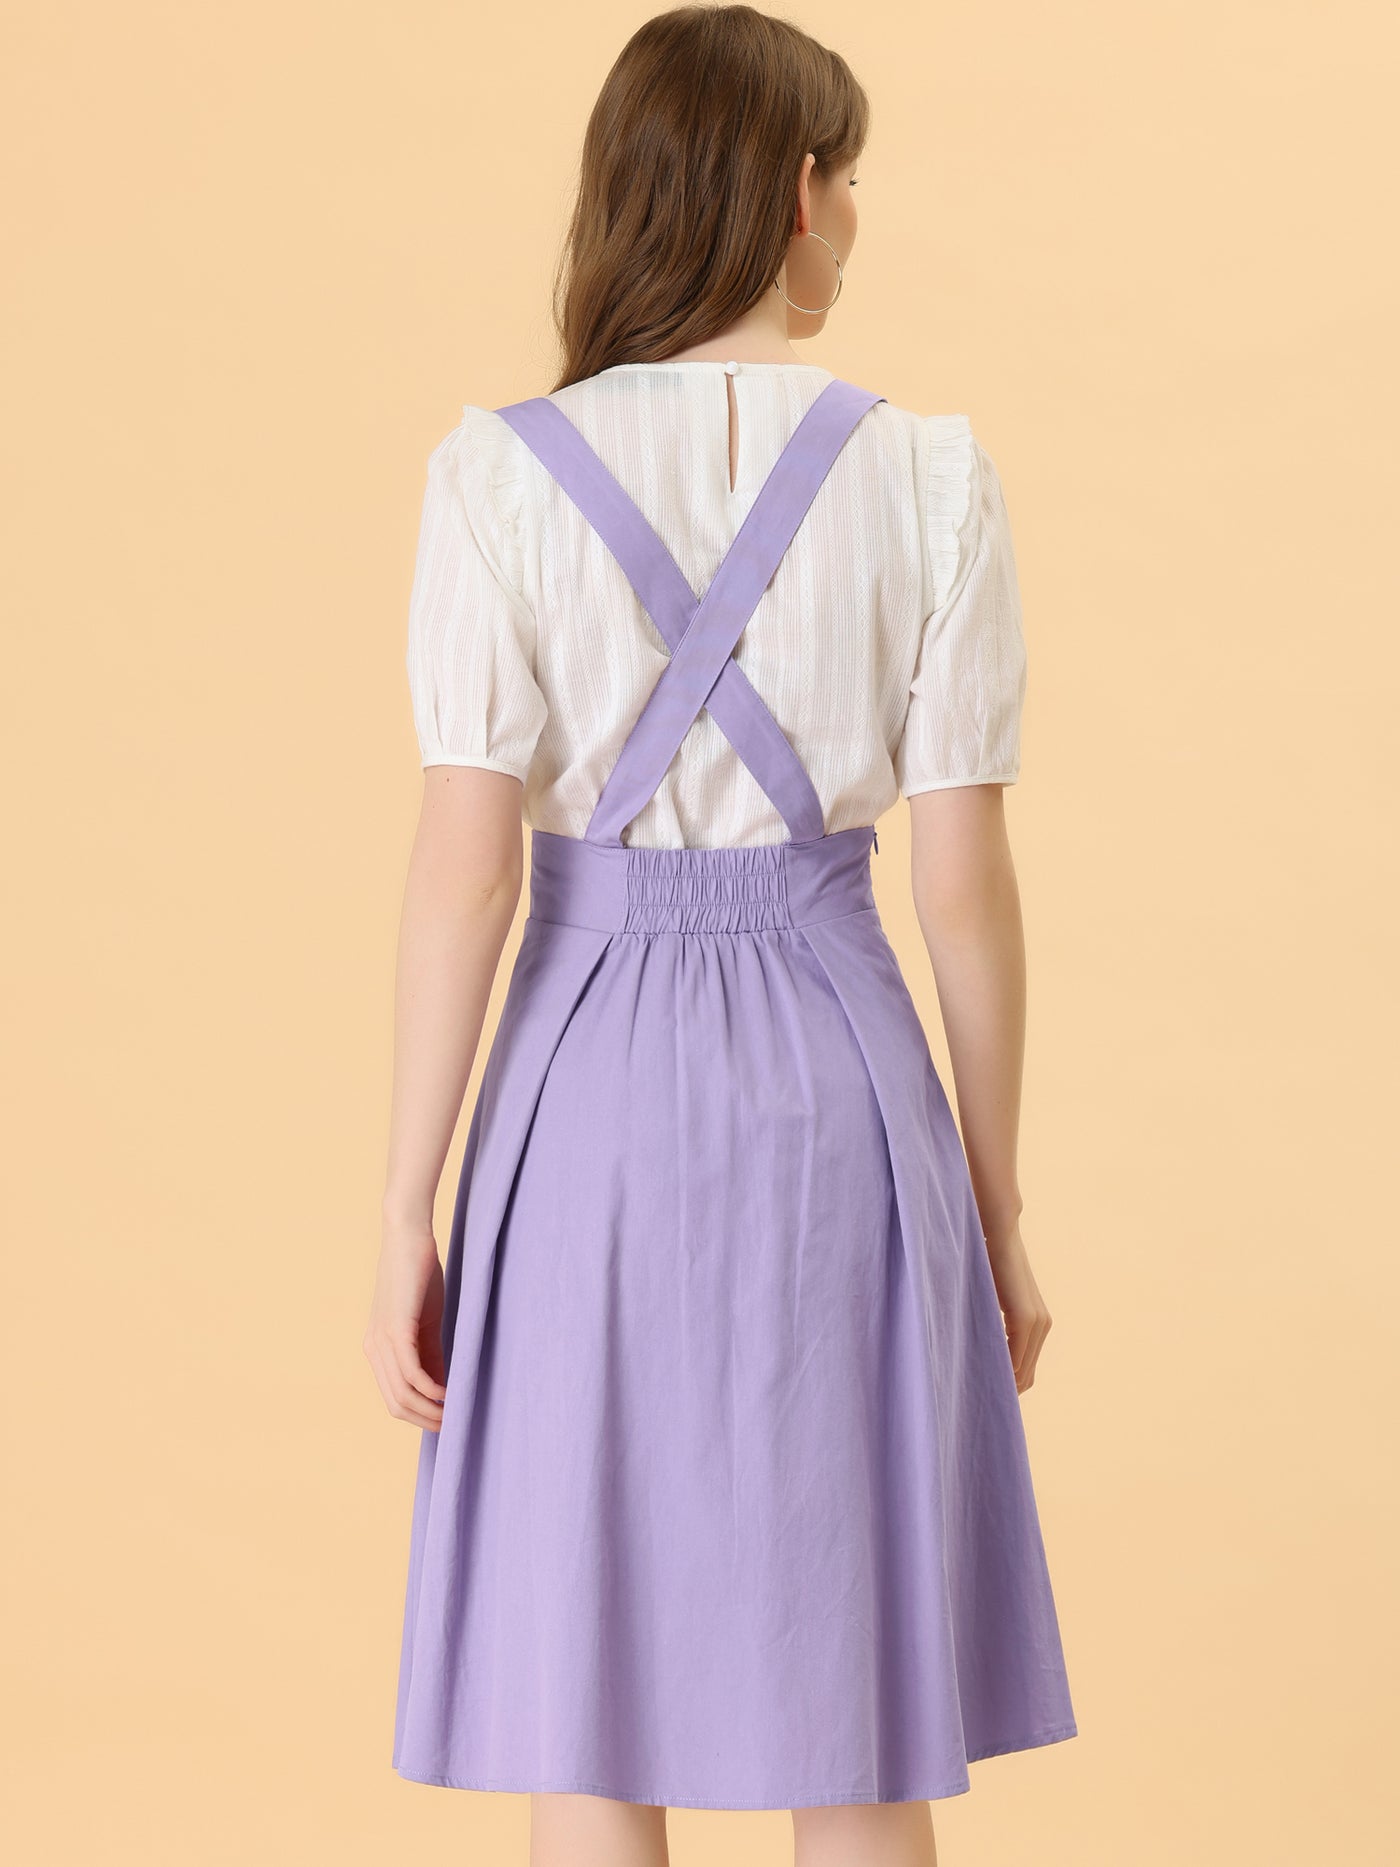 Allegra K Suspender Braces Skirt Elastic Waist Overall Dress